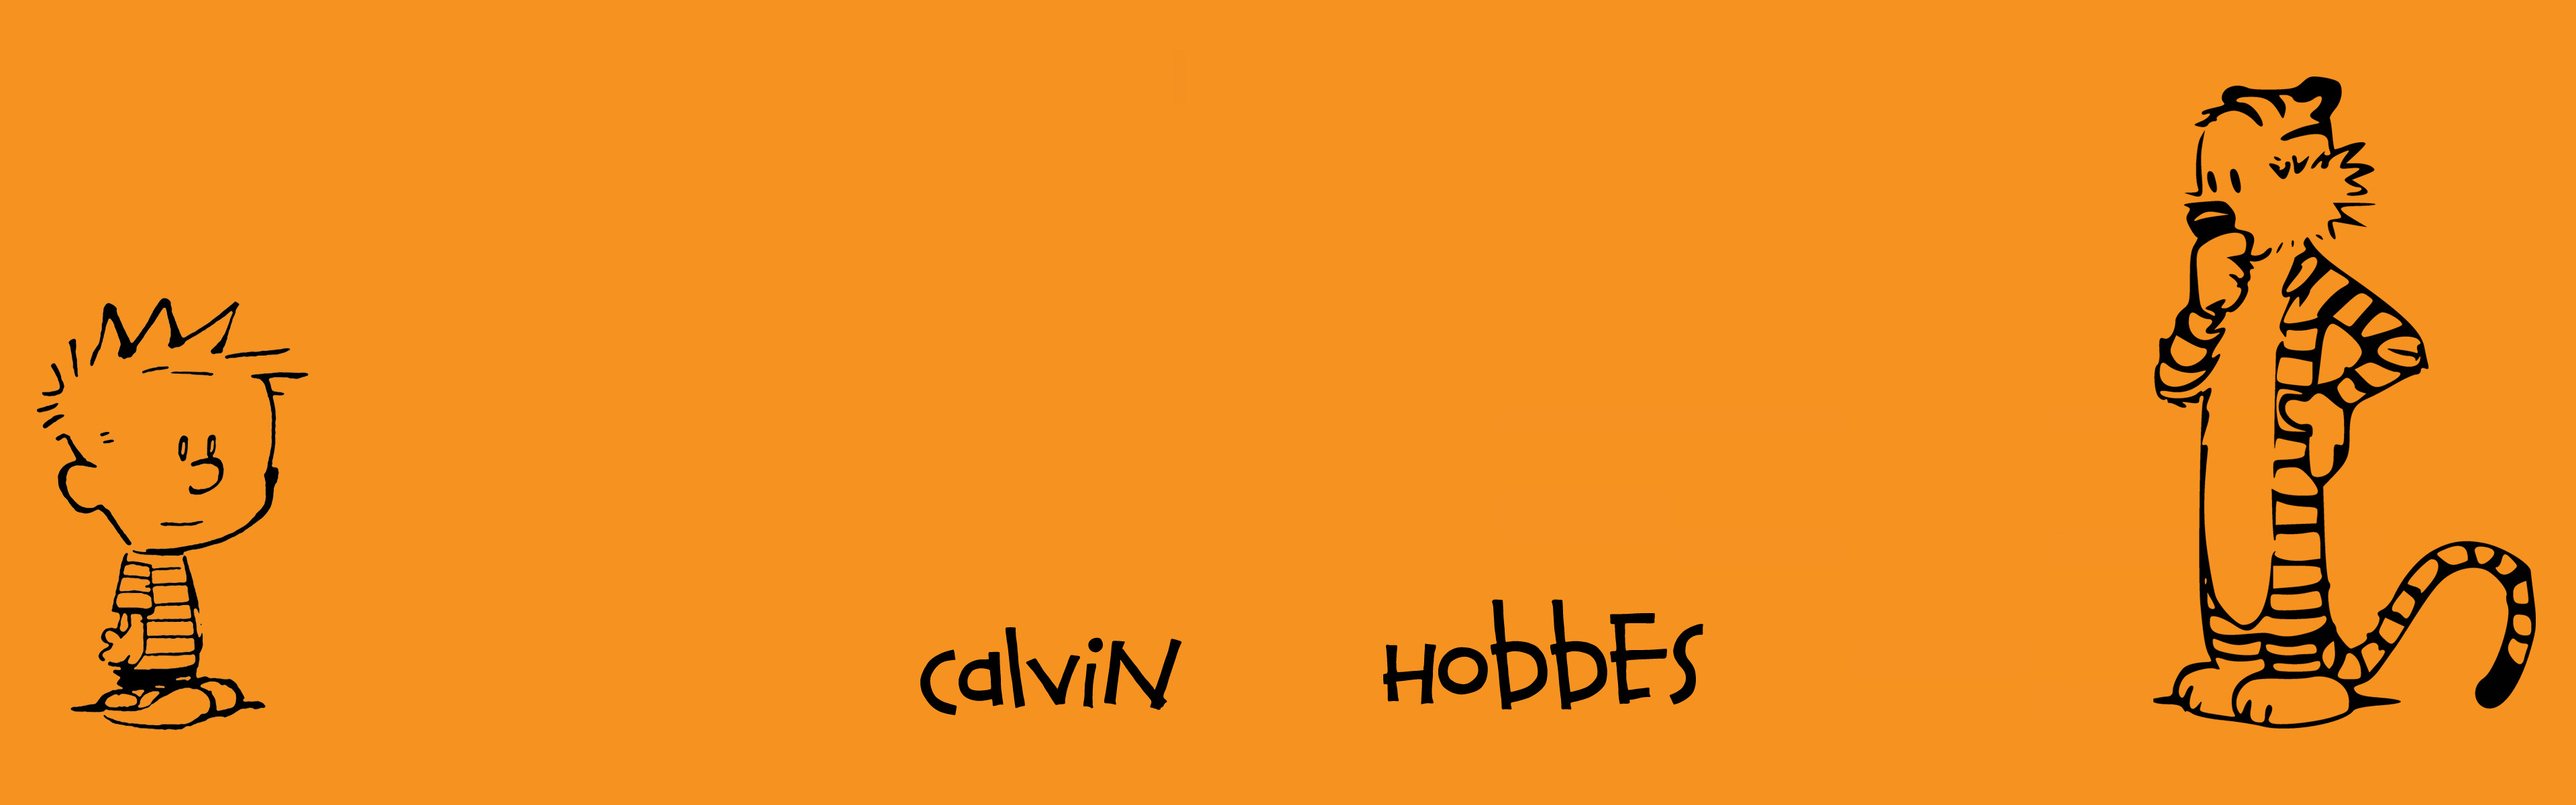 Calvin And Hobbes, Comics, Minimalism, Dual Monitors, Multiple Display Wallpaper